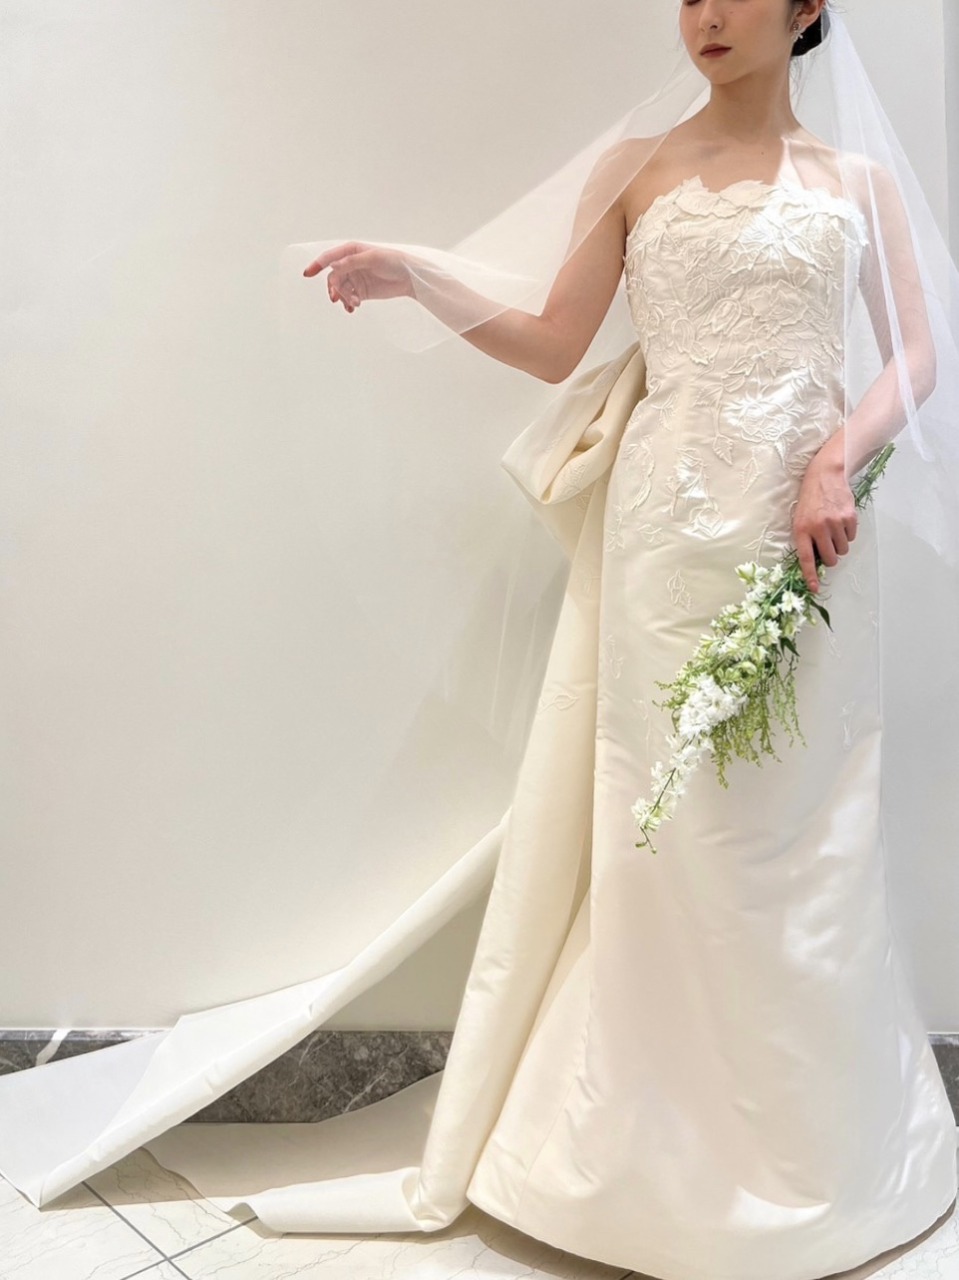 トリートドレッシング神戸店で神戸エリアのおしゃれな花嫁におすすめしたいオスカーデラレンタの新作のウェディングドレスをご自身らしさを演出できるコーディネートと合わせてご紹介します。